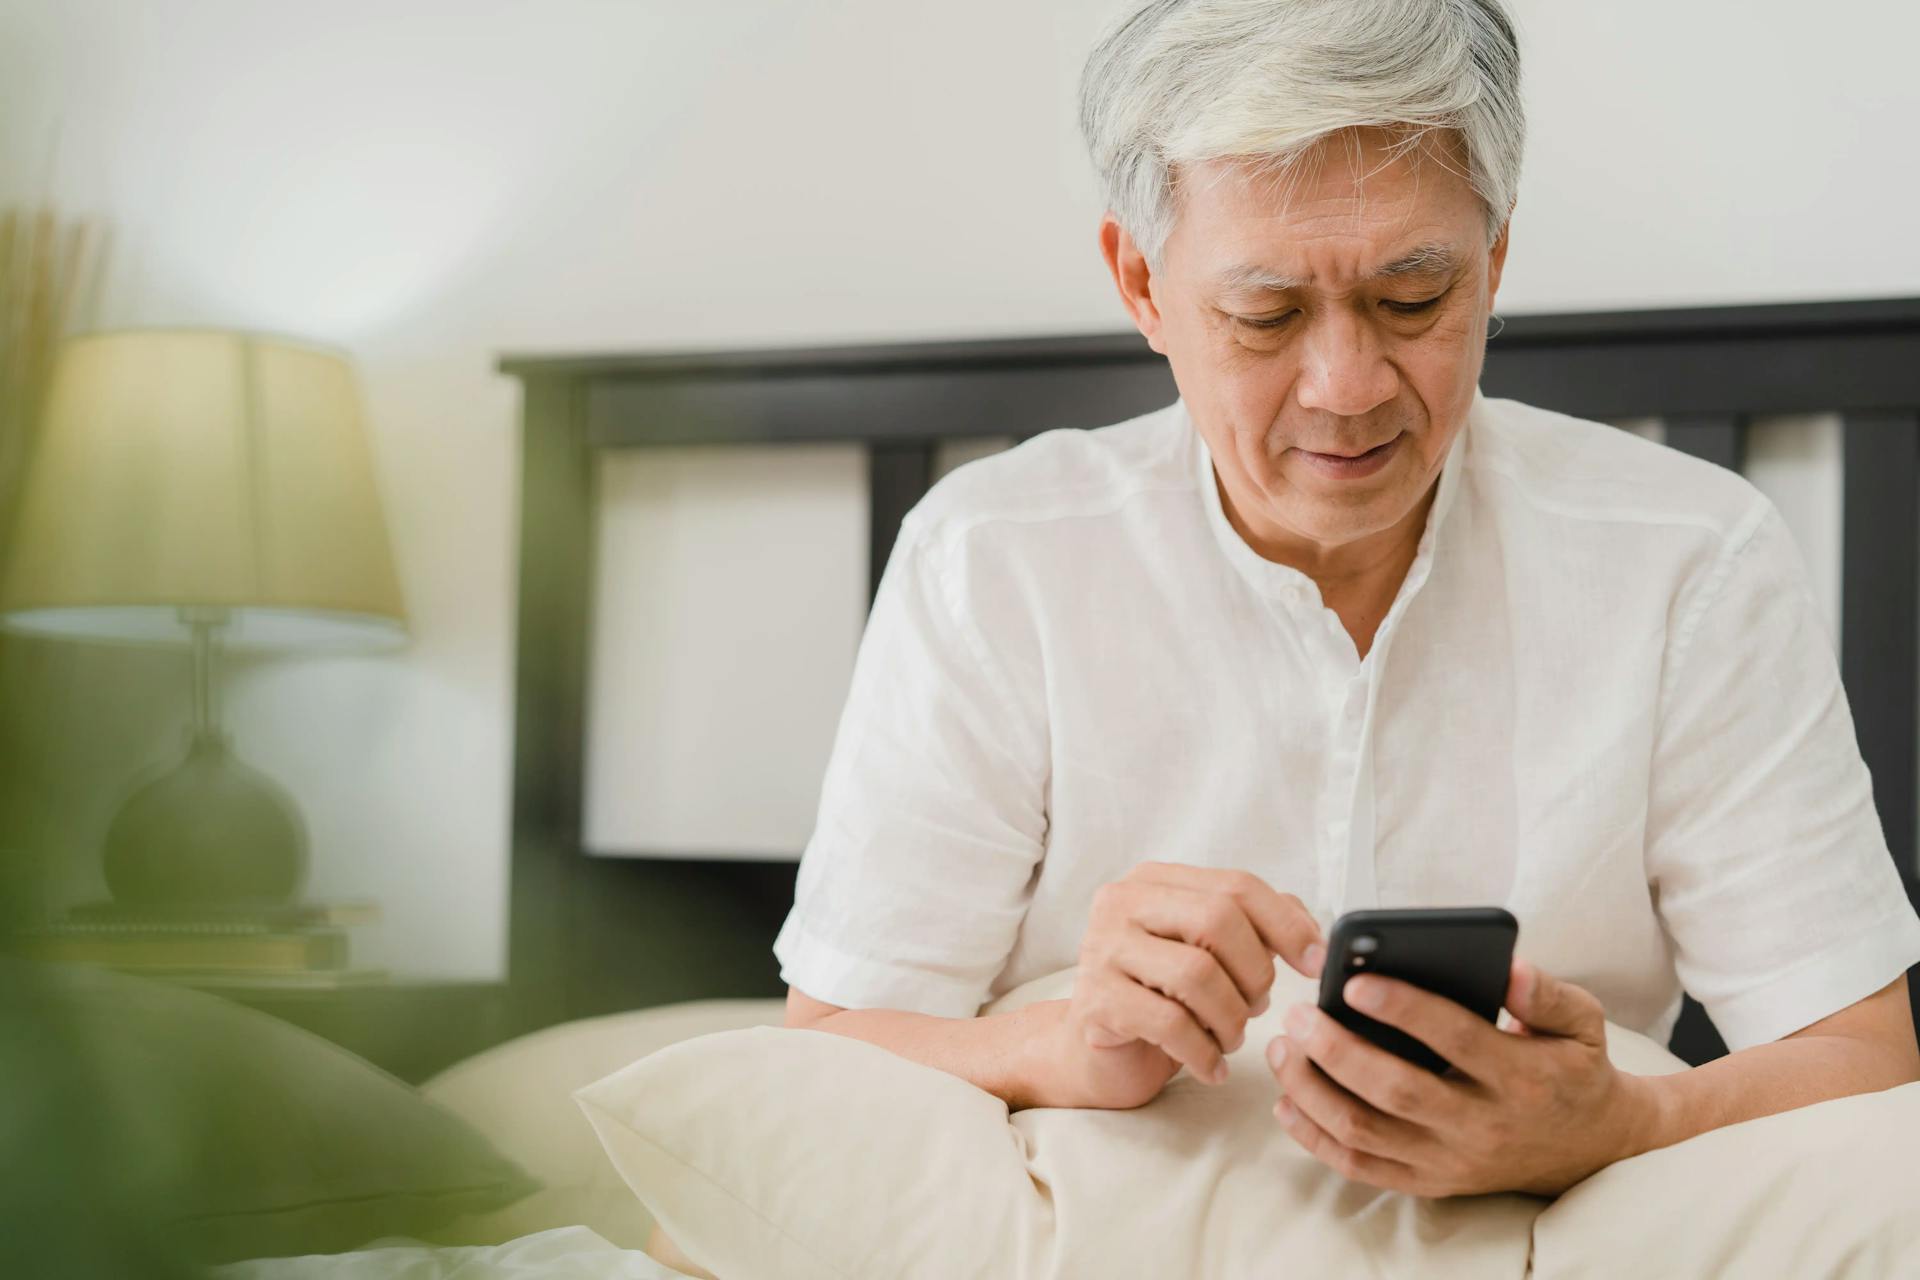 Prova de Vida Digital liberada para servidores aposentados e pensionistas